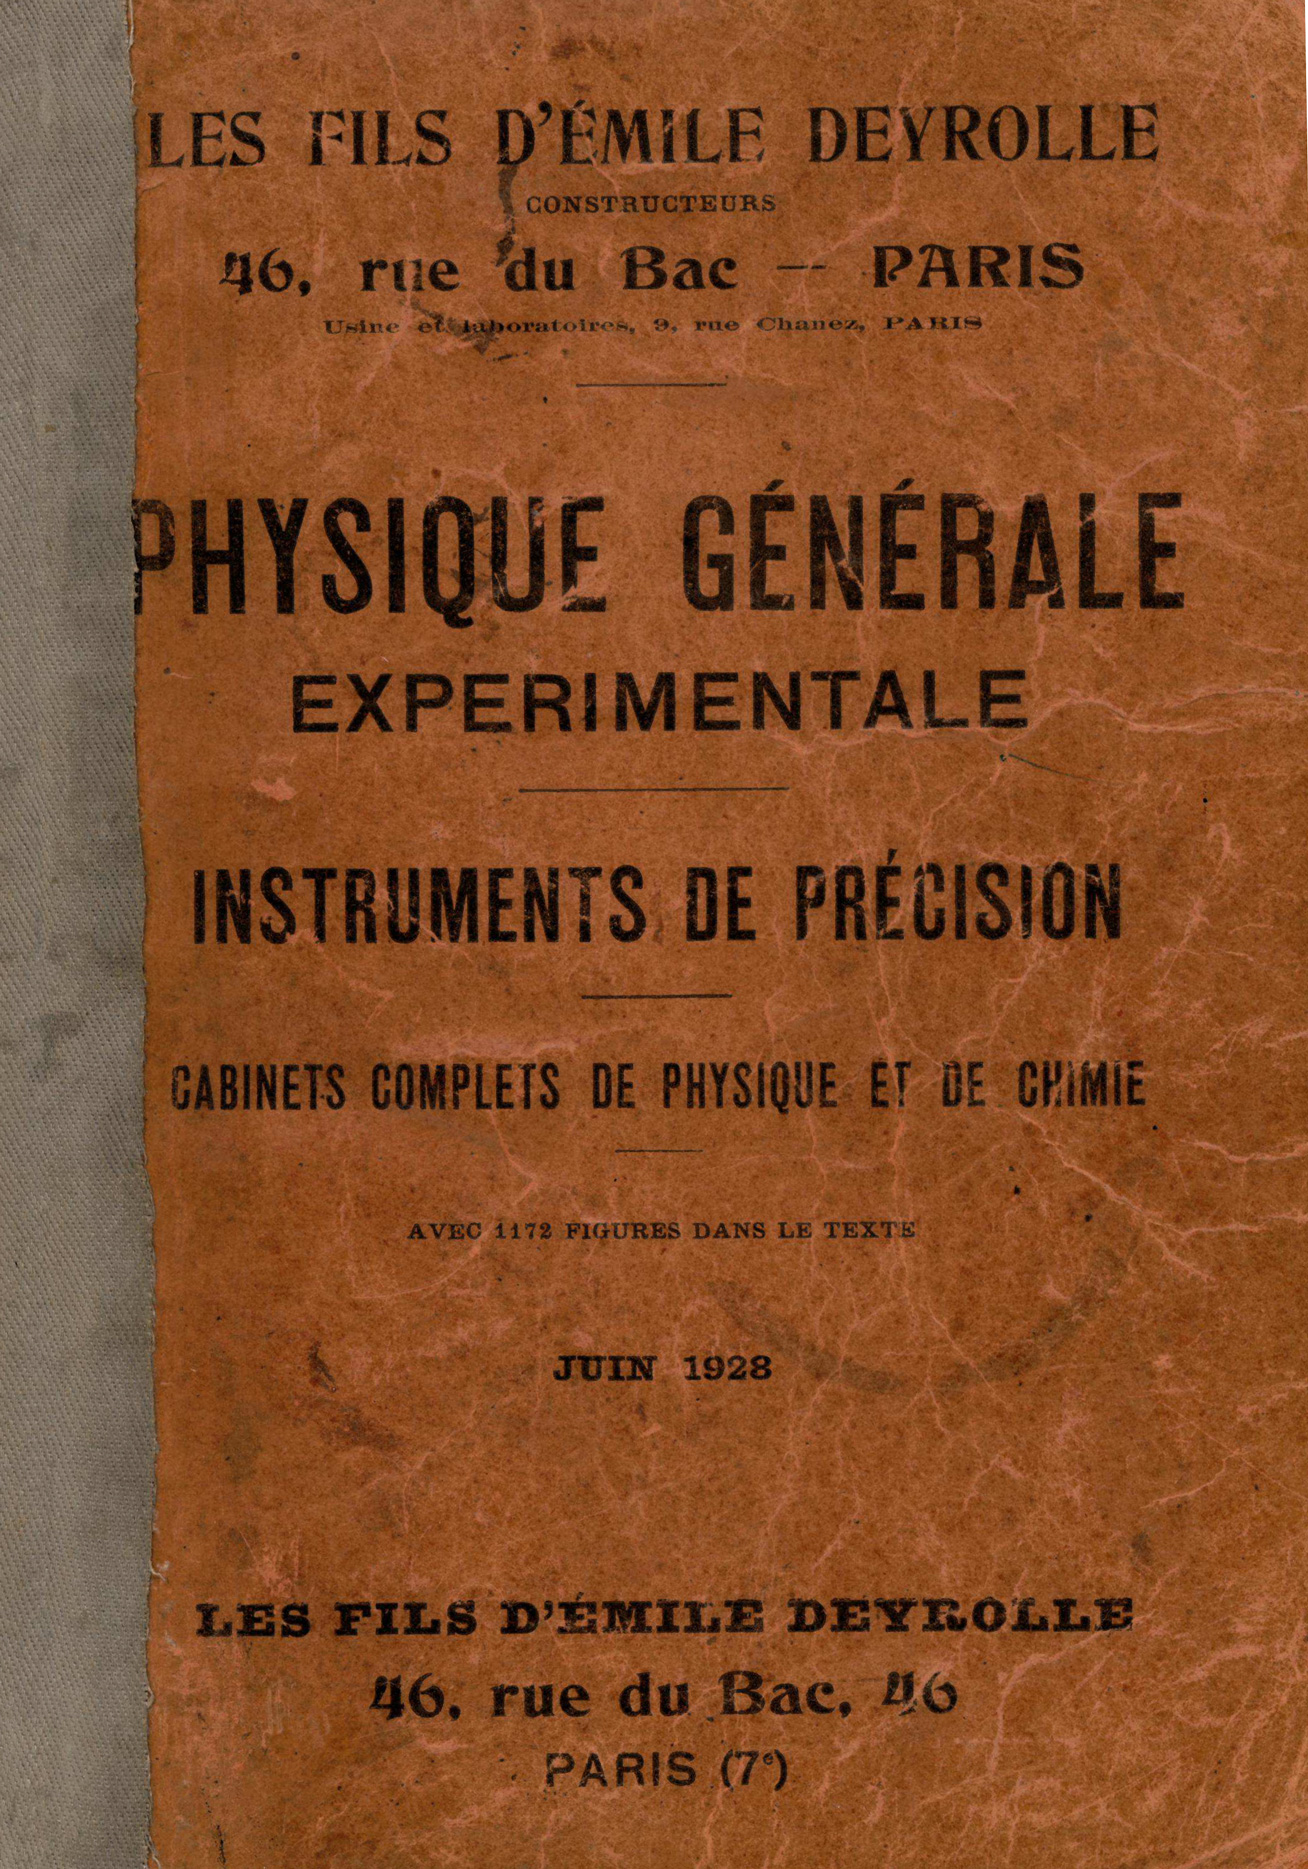 imagem do catálogo LES FILS D'ÉMILE DEYROLLE - PHYSIQUE GÉNERALE EXPERIMENTALE (1928)